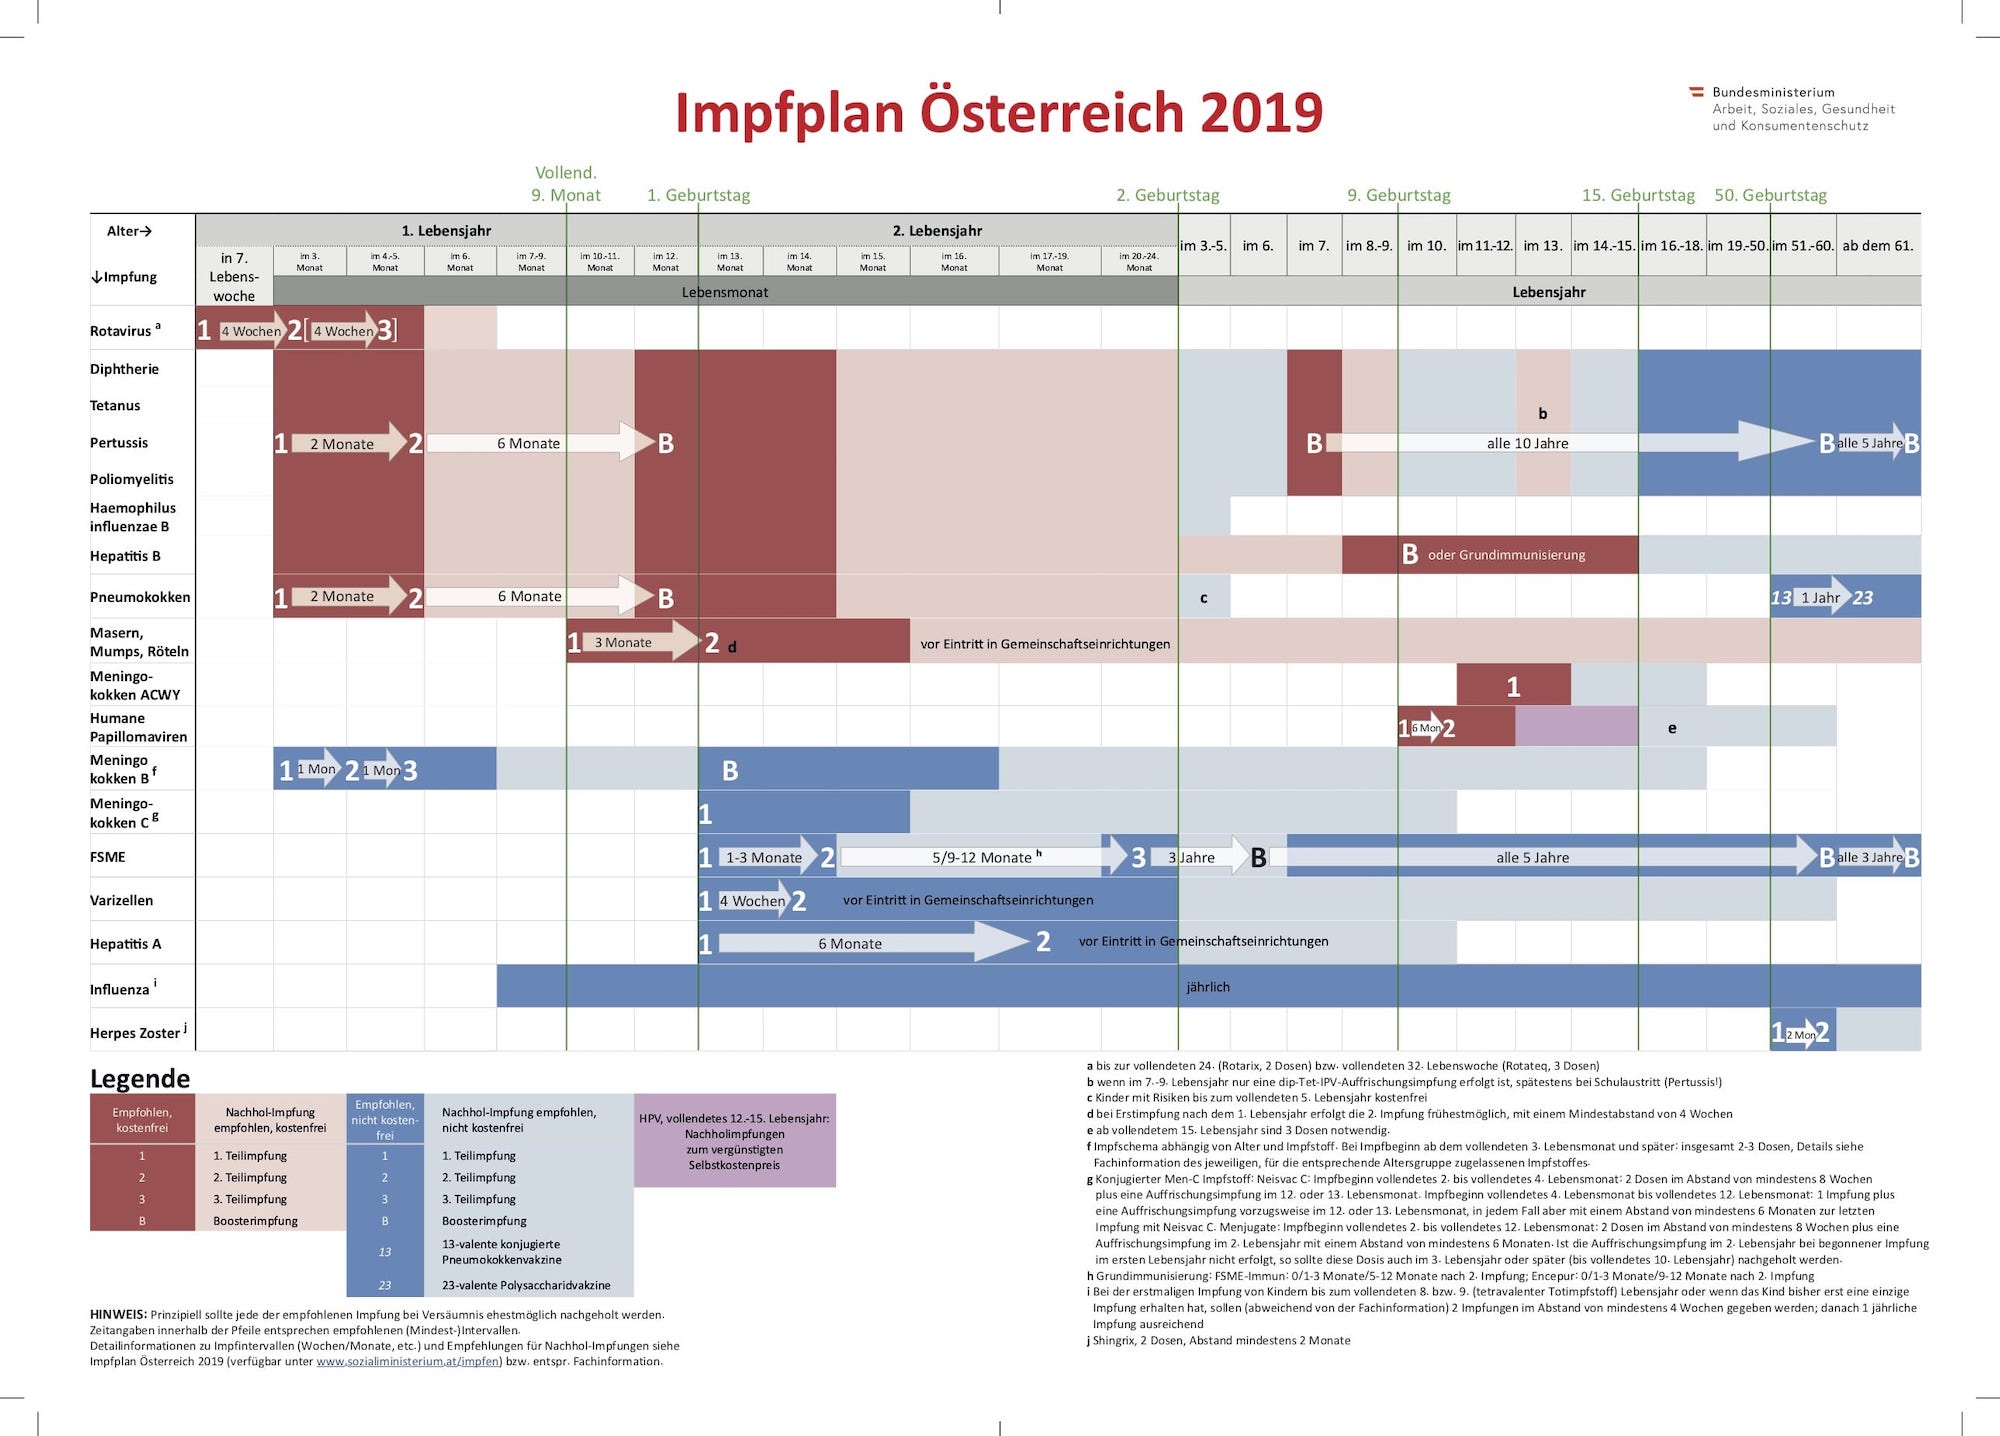 Impfplan für Österreich 2019